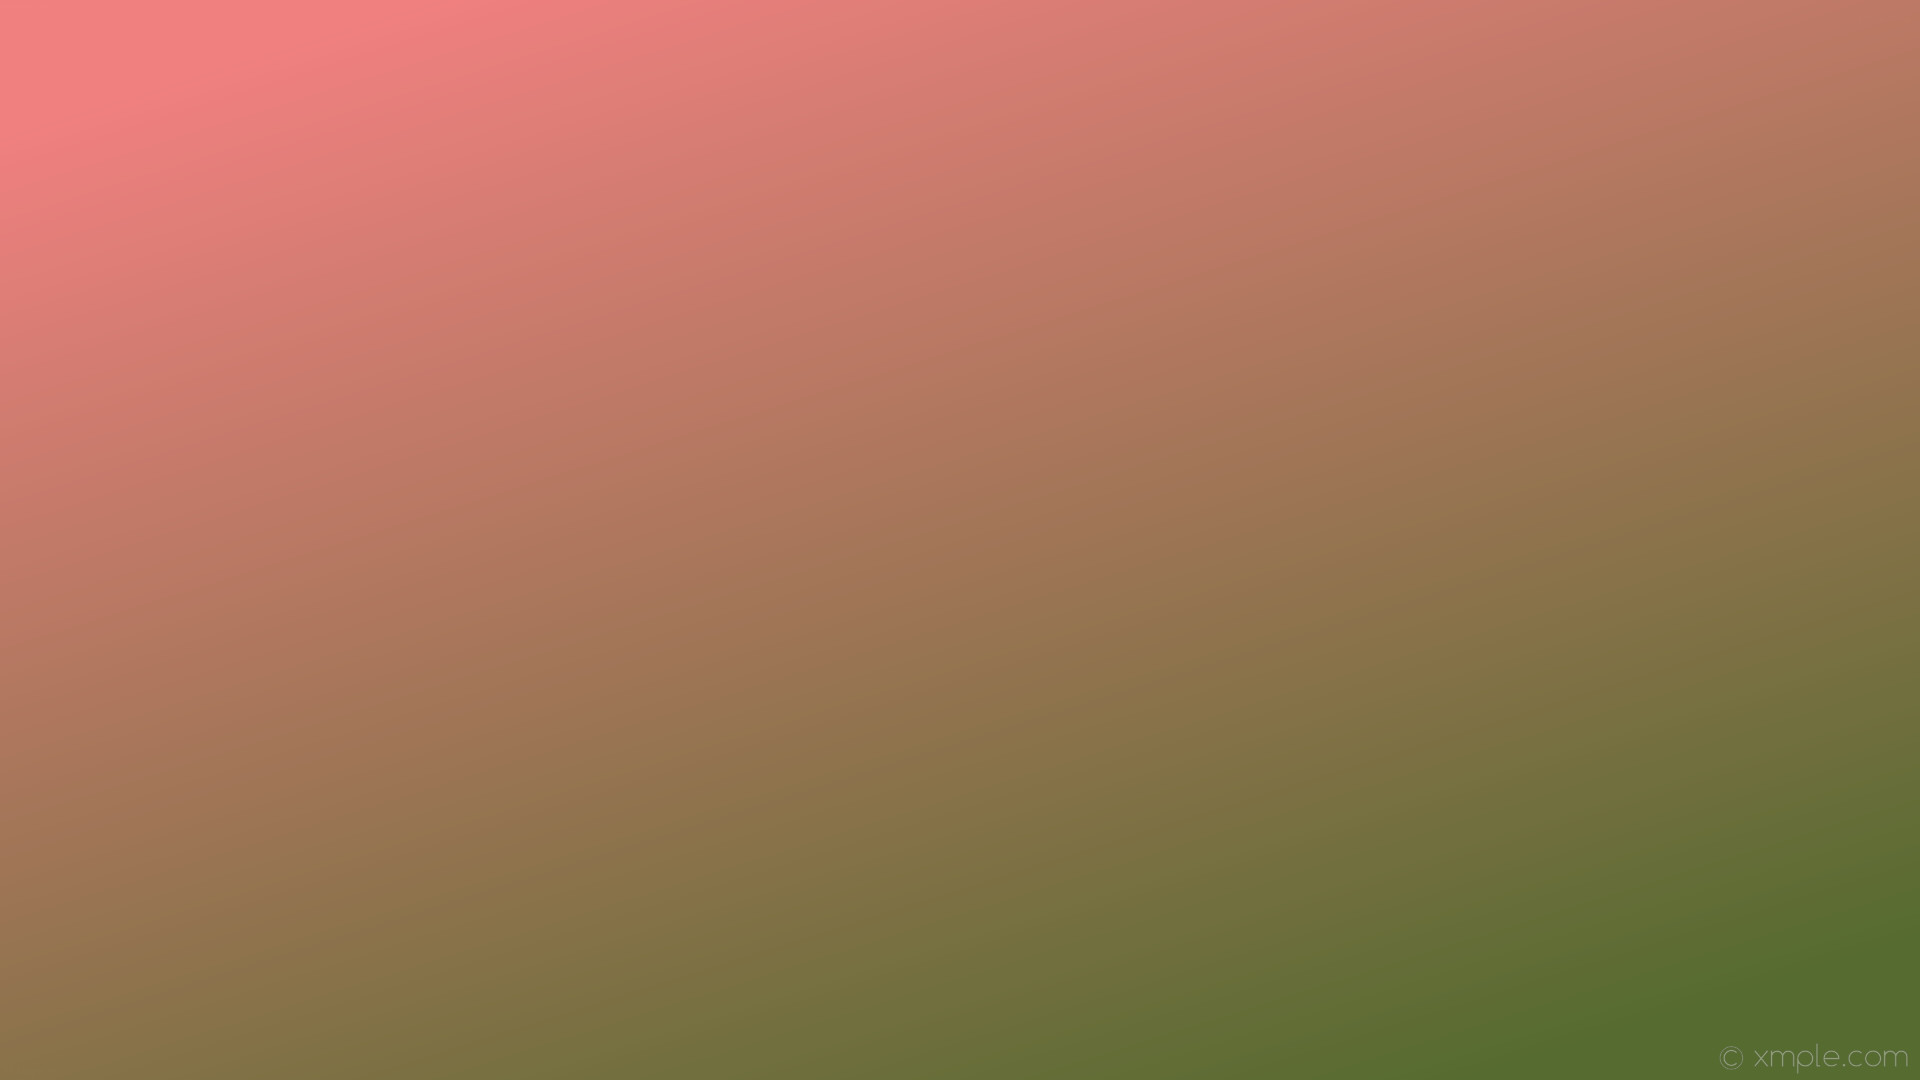 1920x1080 wallpaper red green gradient linear light coral dark olive green #f08080  #556b2f 135Â°